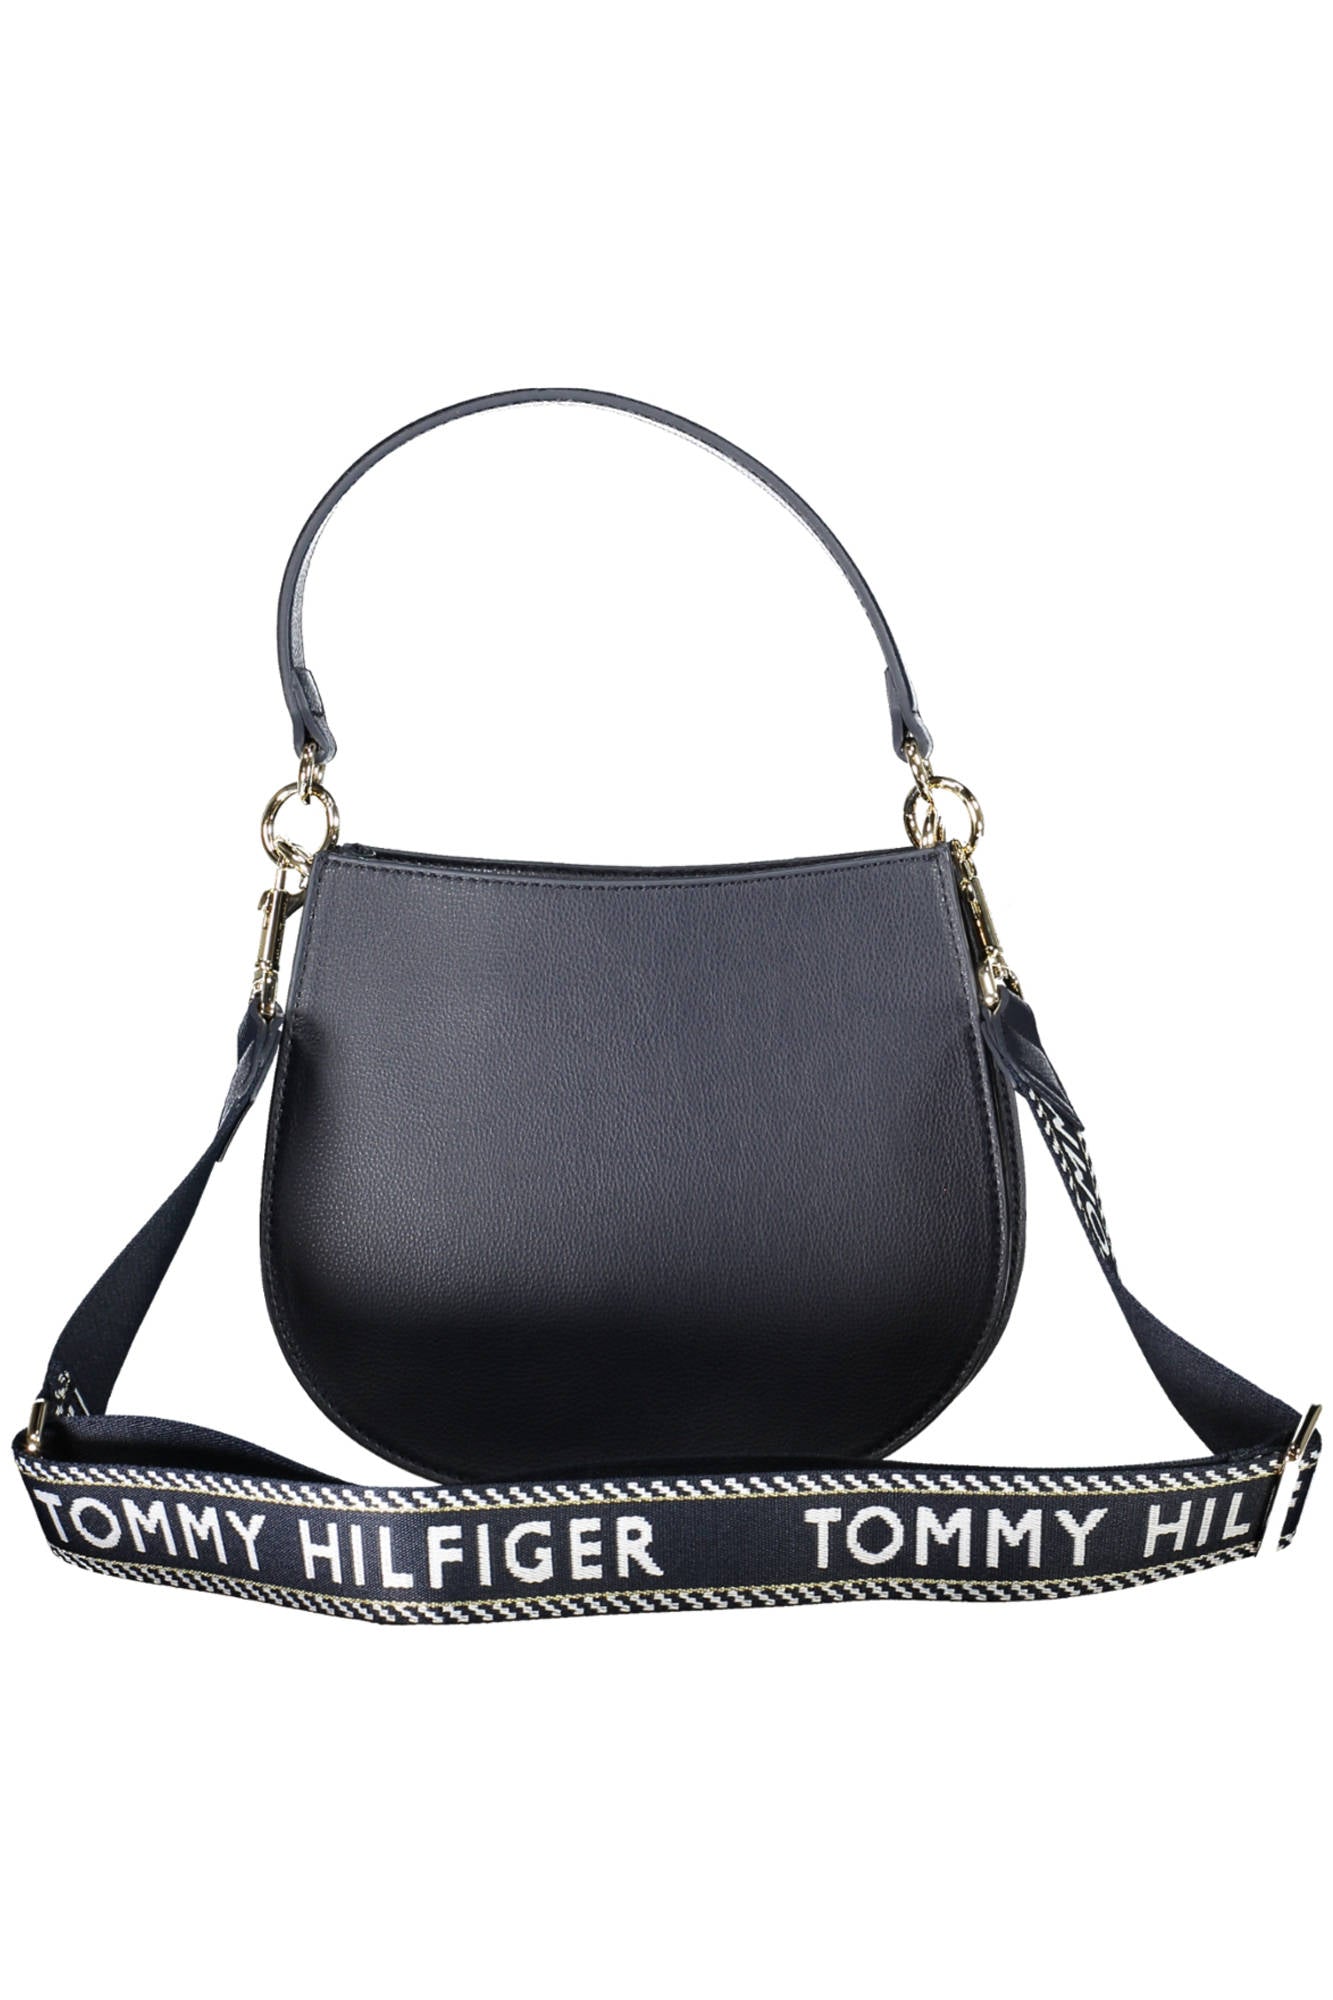 TOMMY HILFIGER BLUE WOMEN'S BAG